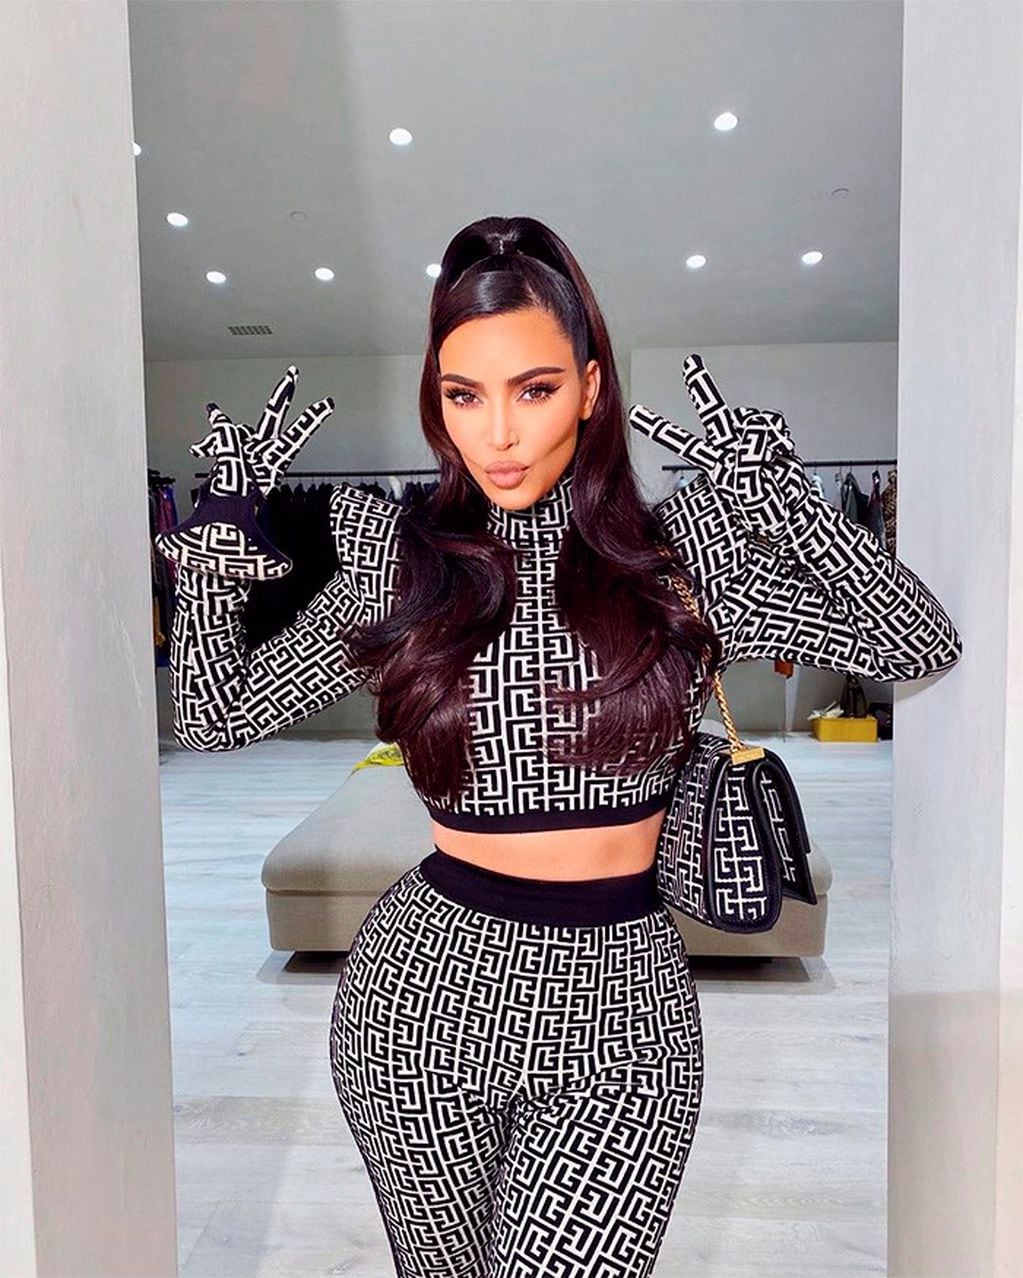 Kim Kardashian usando el polémico atuendo.